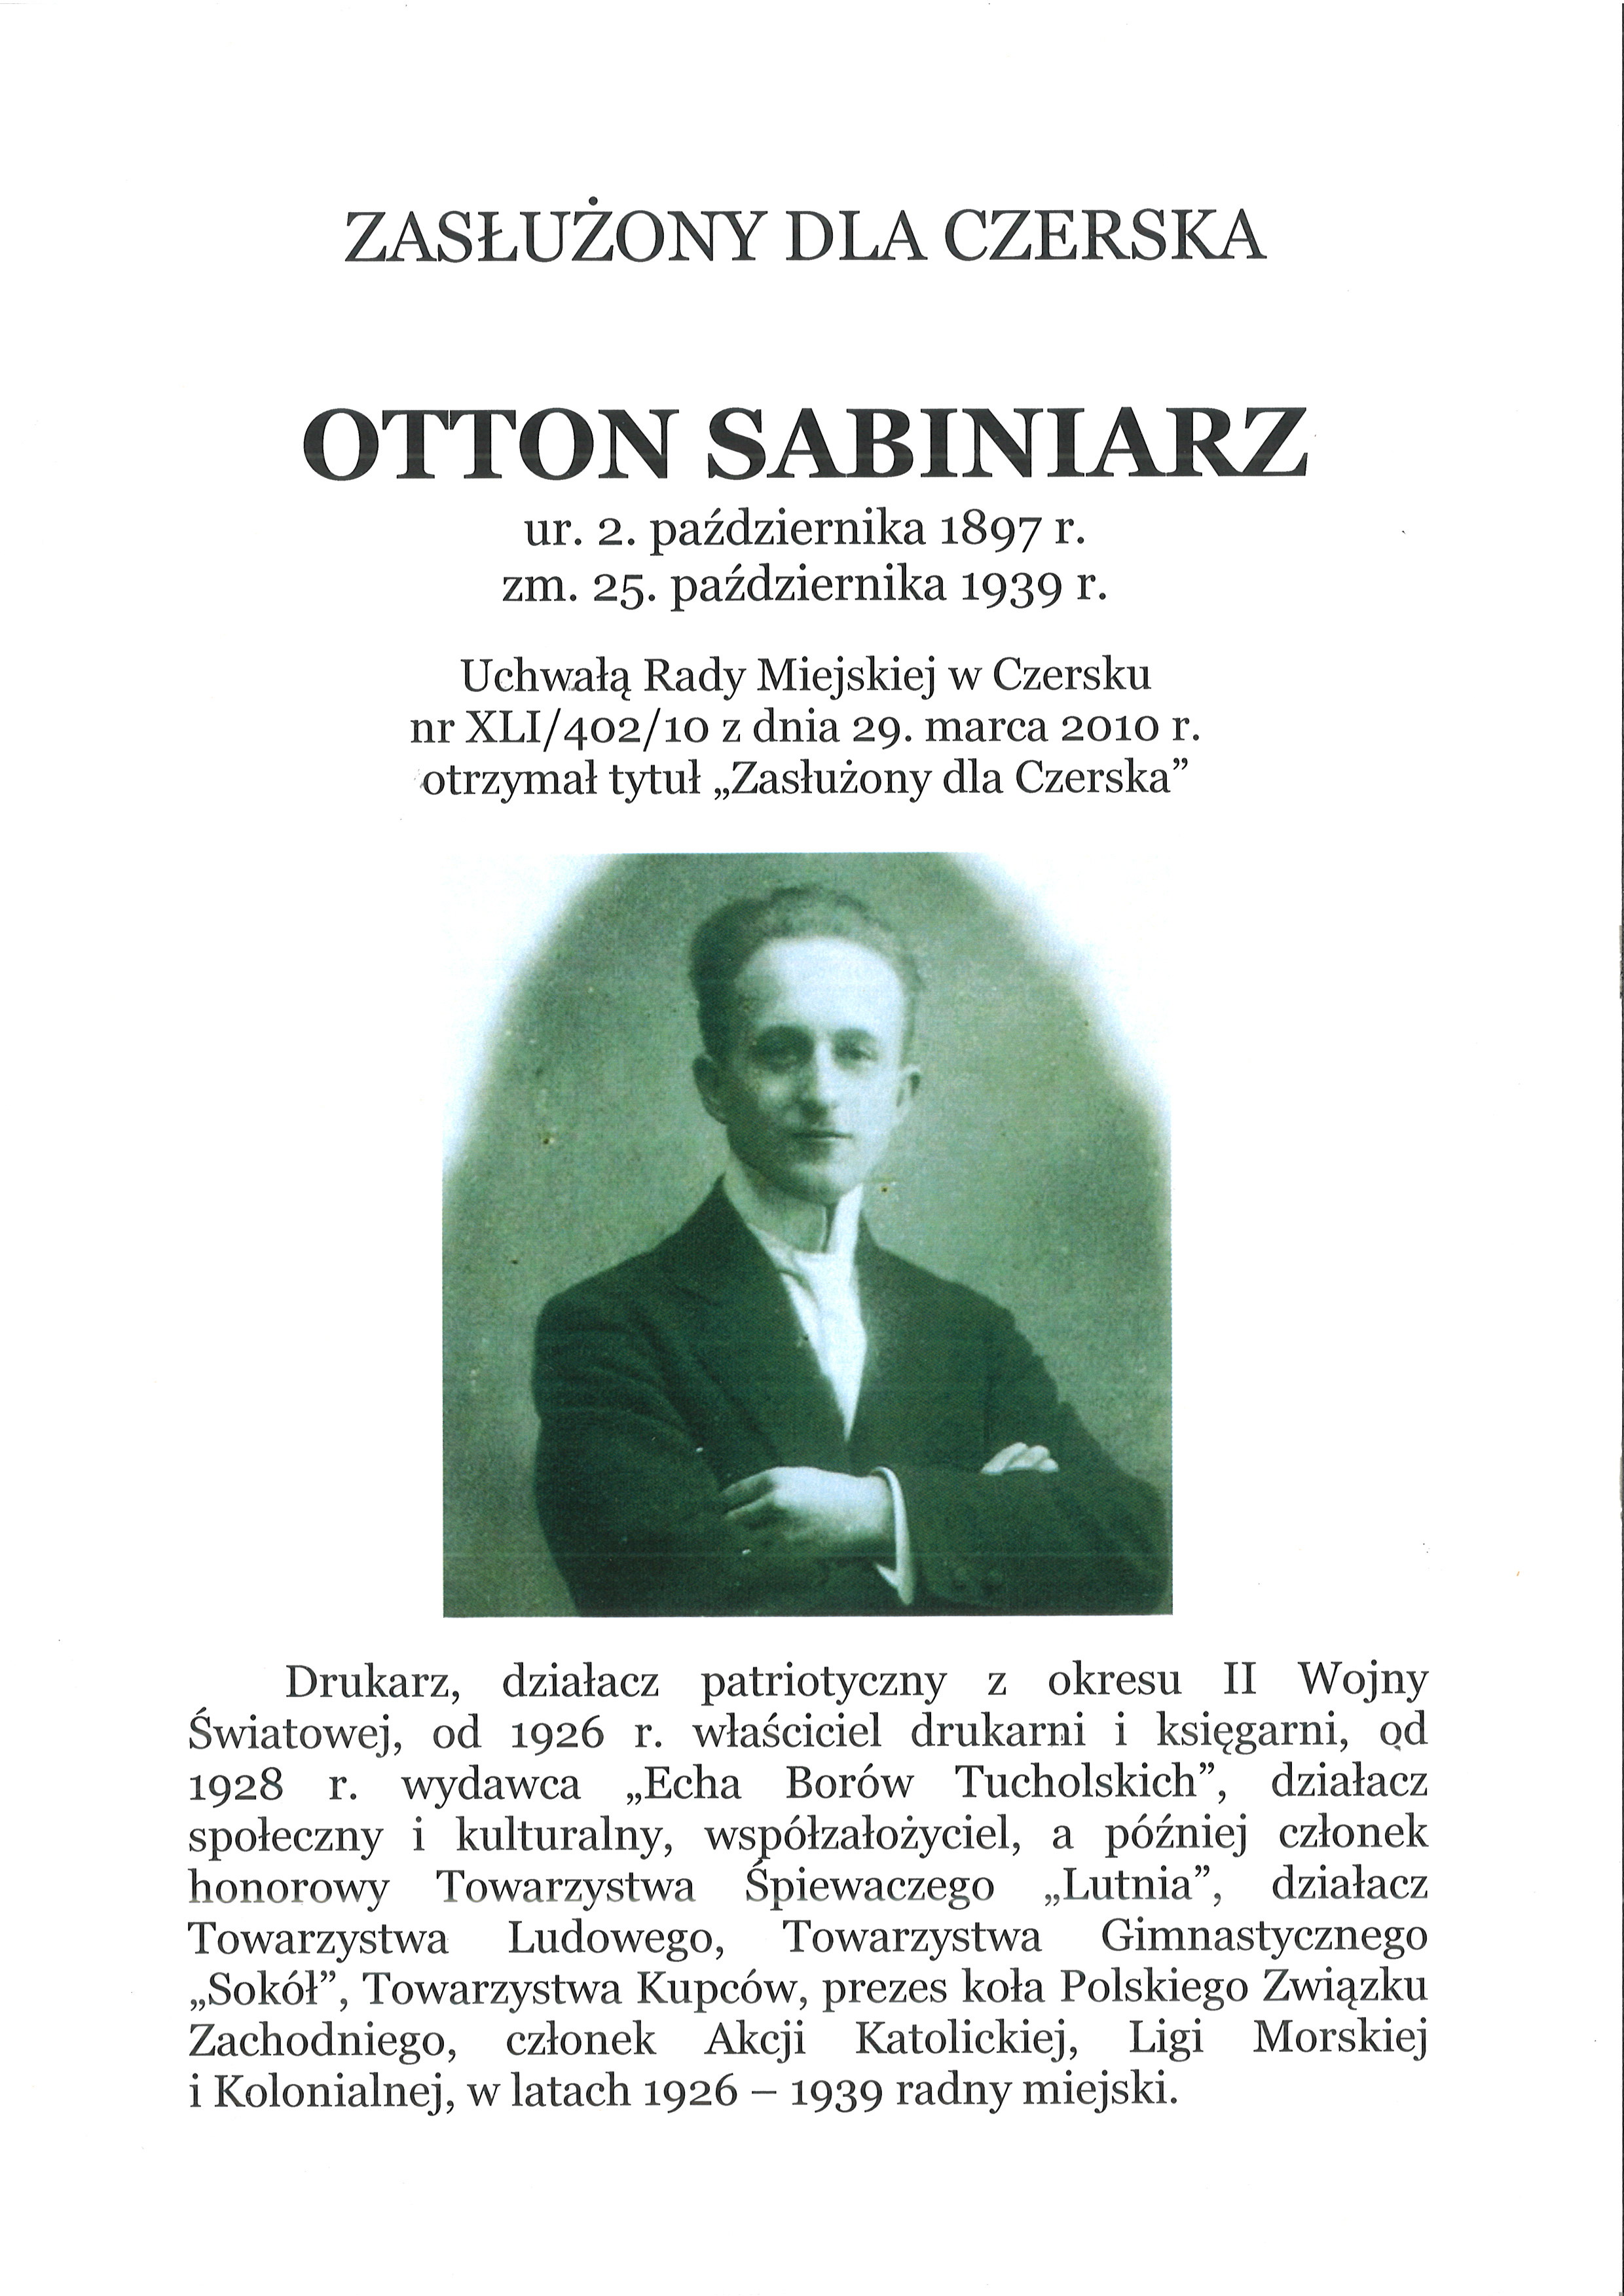 Otton Sabiniarz